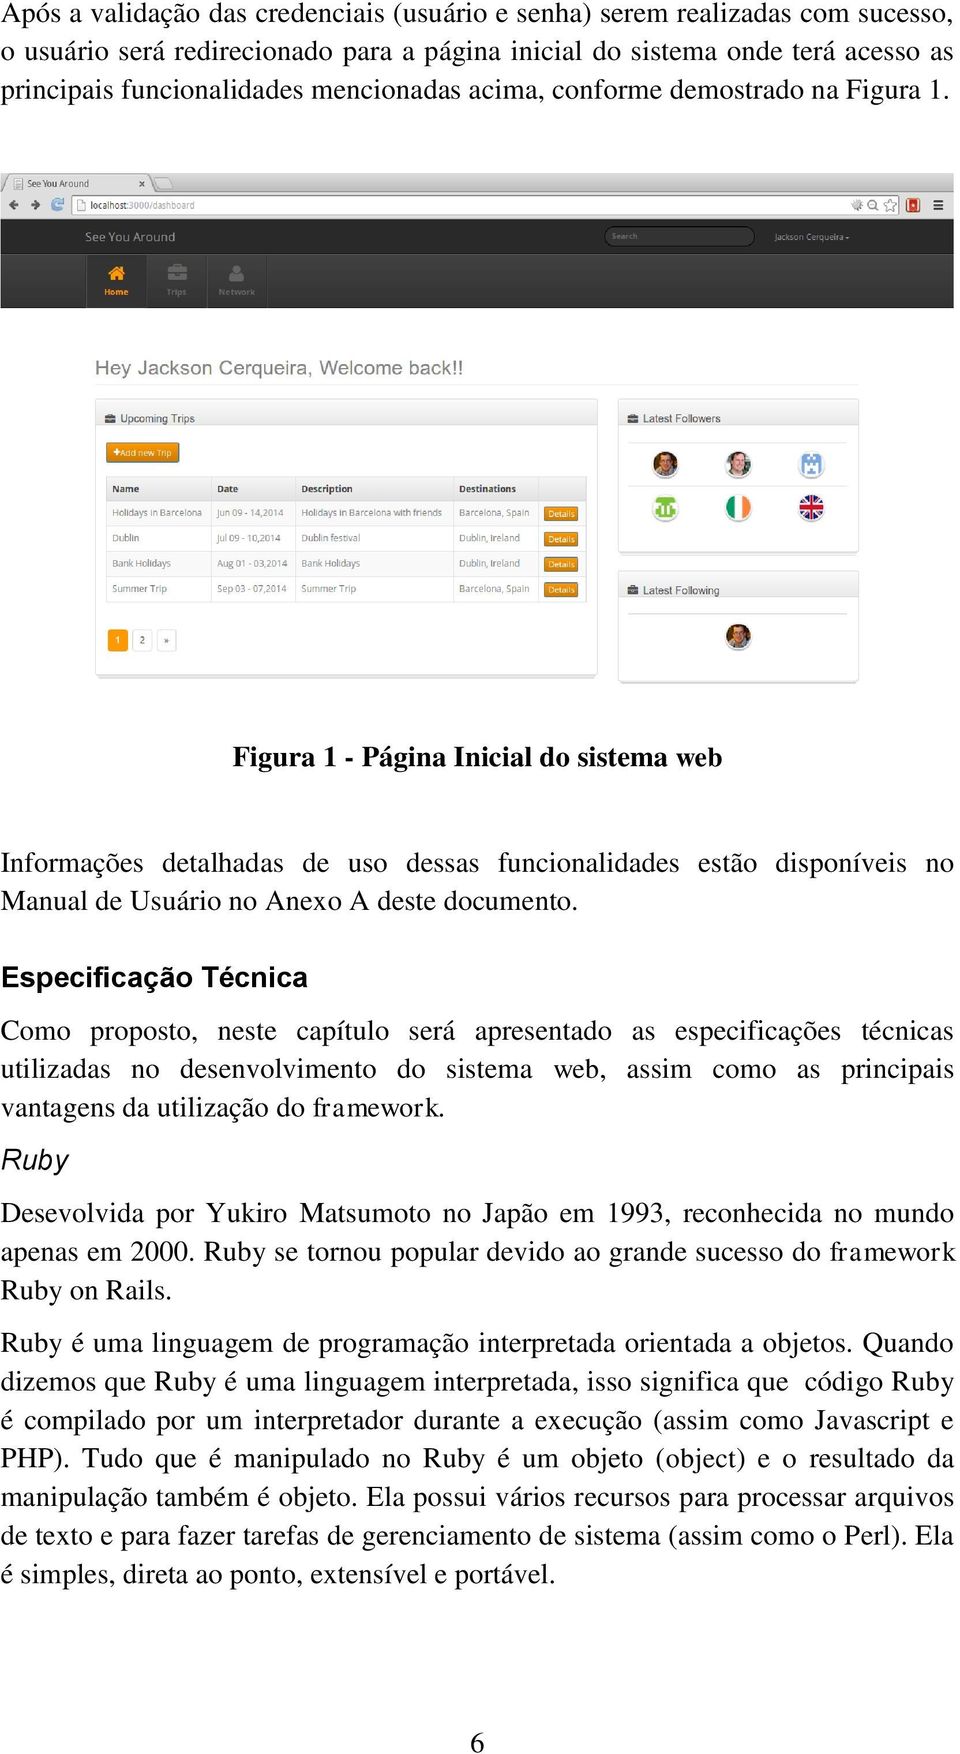 Figura 1 - Página Inicial do sistema web Informações detalhadas de uso dessas funcionalidades estão disponíveis no Manual de Usuário no Anexo A deste documento.